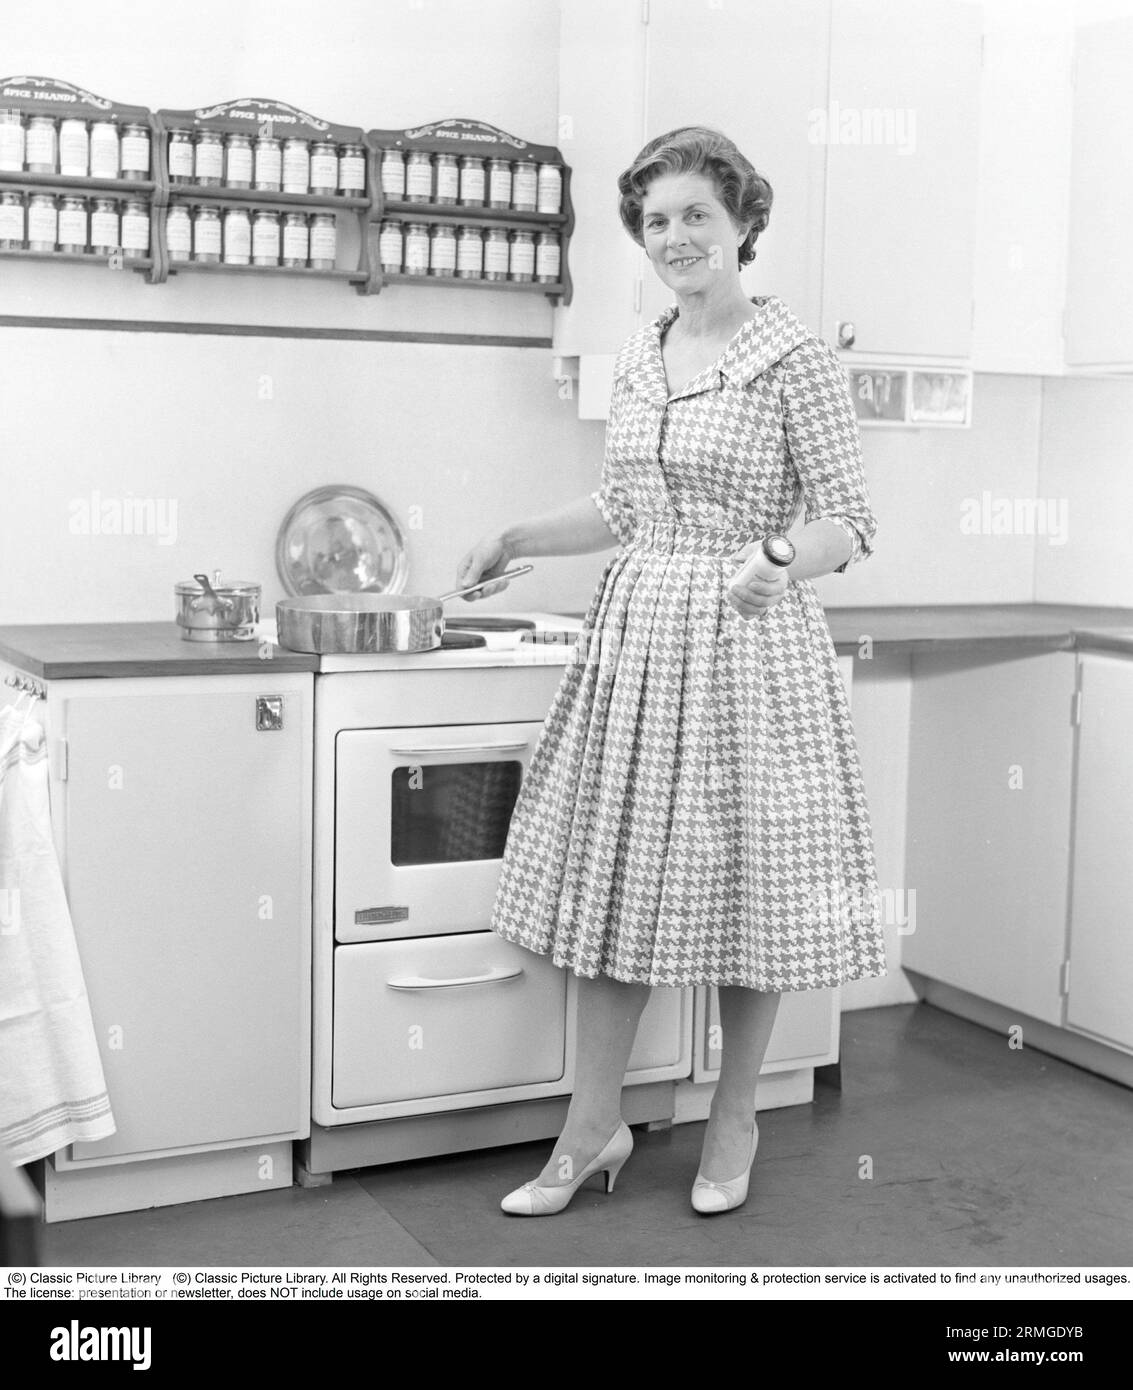 Dans les années 1950 Une femme dans une cuisine typique des années 1950 avec des armoires en bois et un ensemble d'épices sur des étagères au-dessus de la cuisinière. Elle a une casserole sur la cuisinière mais rien ne cuisine dedans. Suède 1959. Kristoffersson réf CE103-6 Banque D'Images